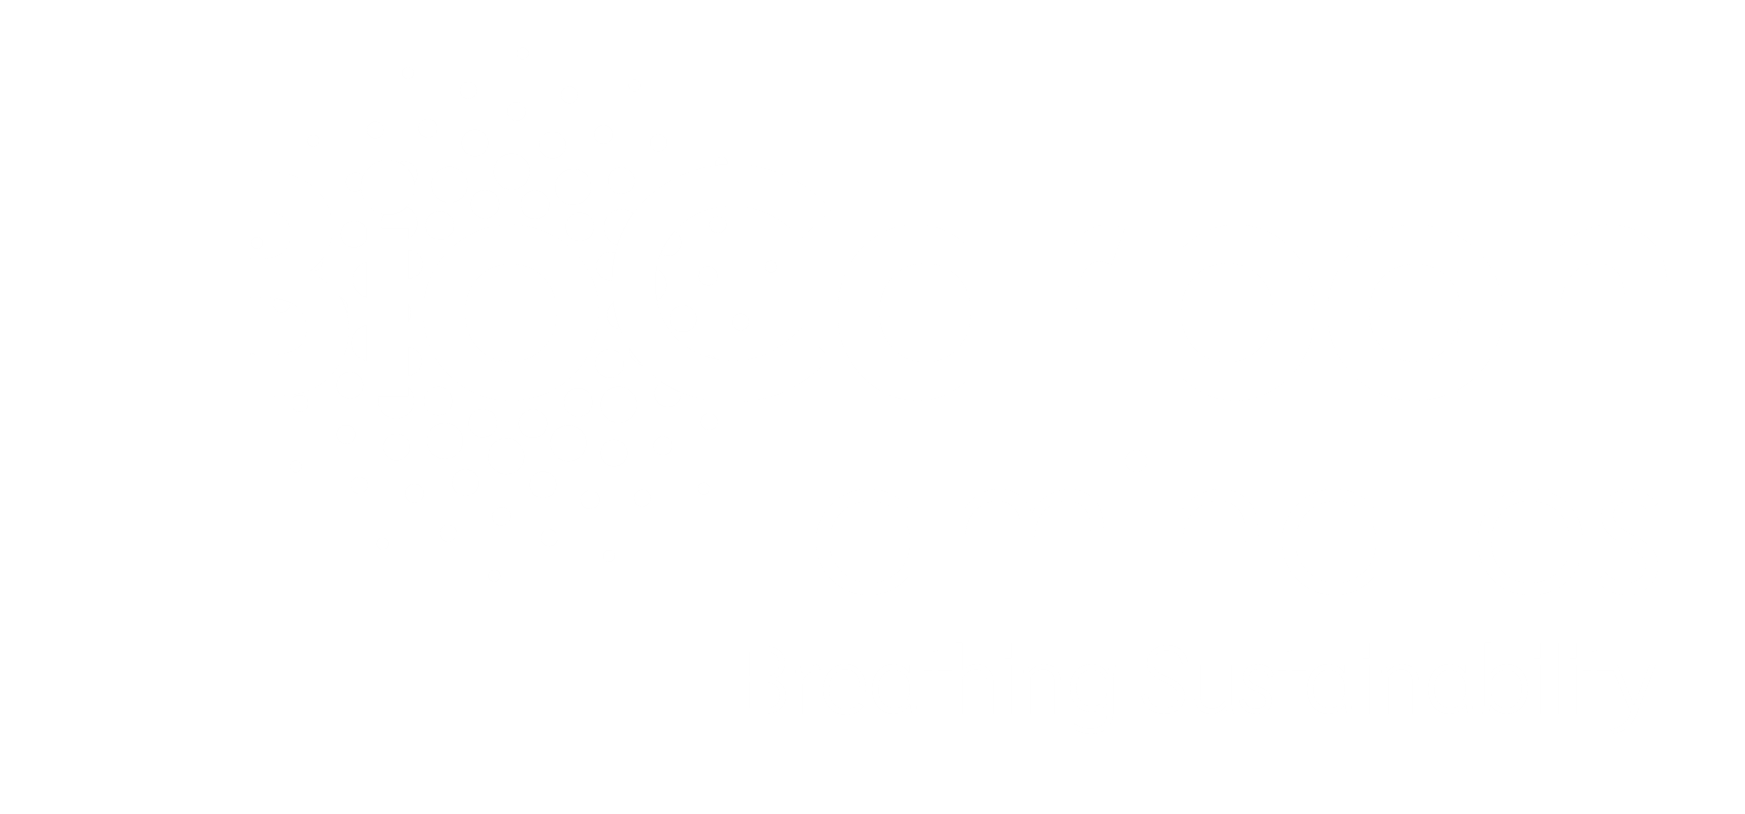 BioCarbon Laminates